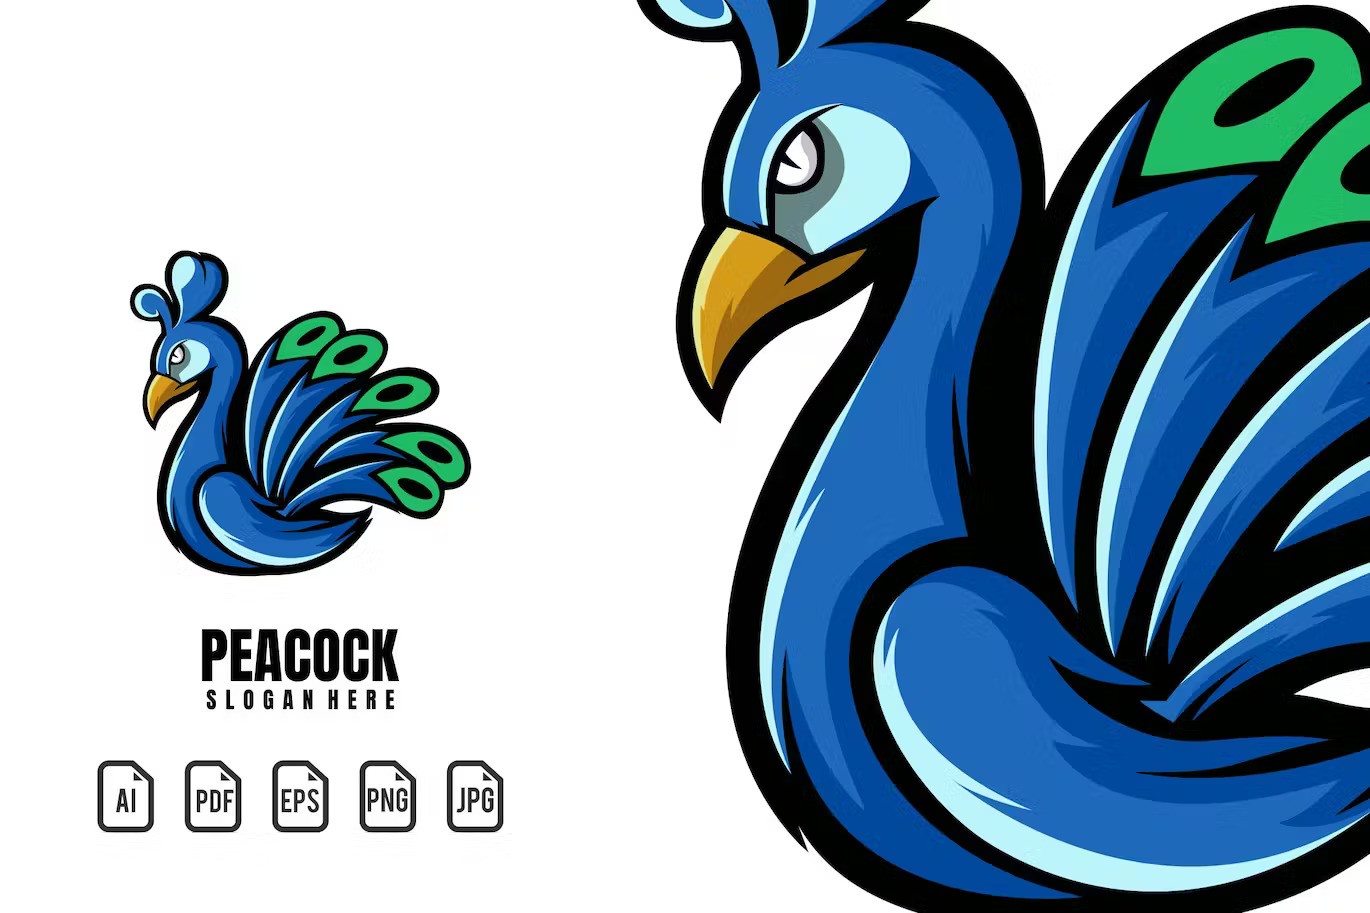 A peacock mascot logo template